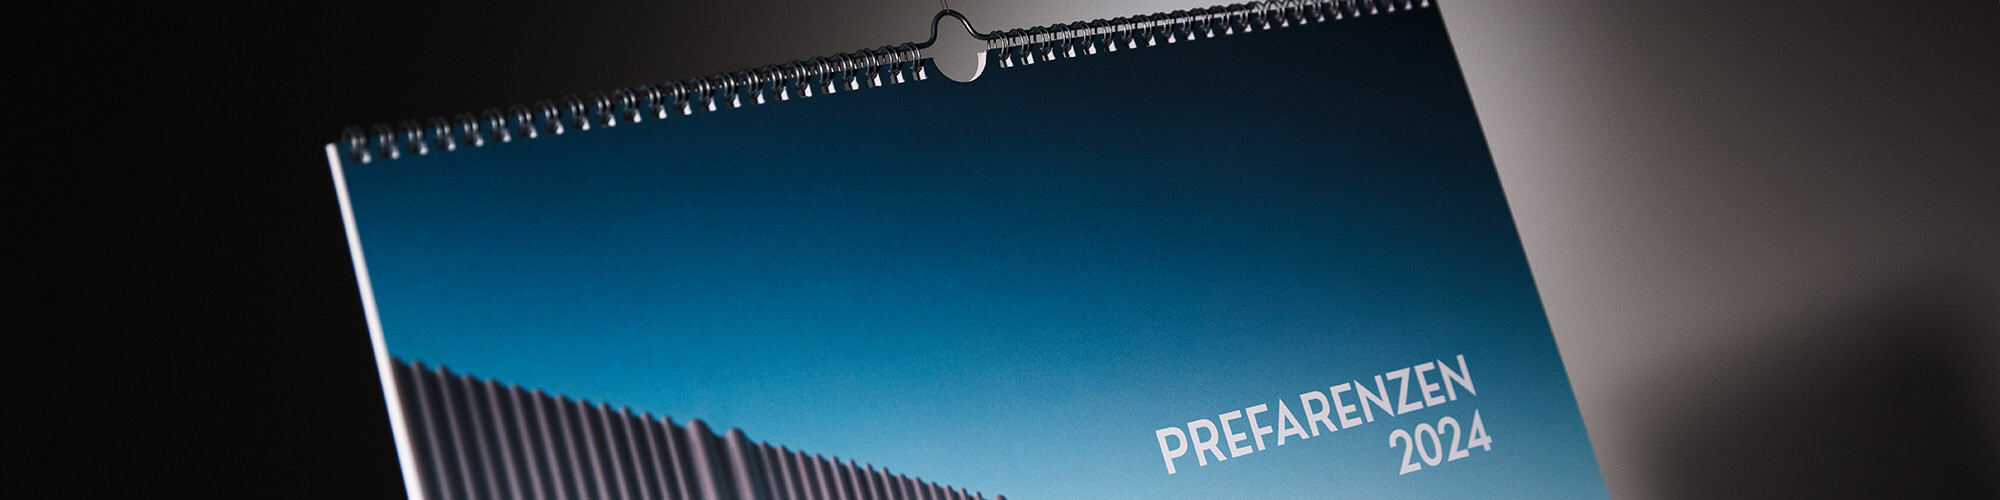 Un primo piano della copertina del calendario; si possono vedere parte di una facciata ondulata in alluminio e la scritta PREFARENZEN 2024.